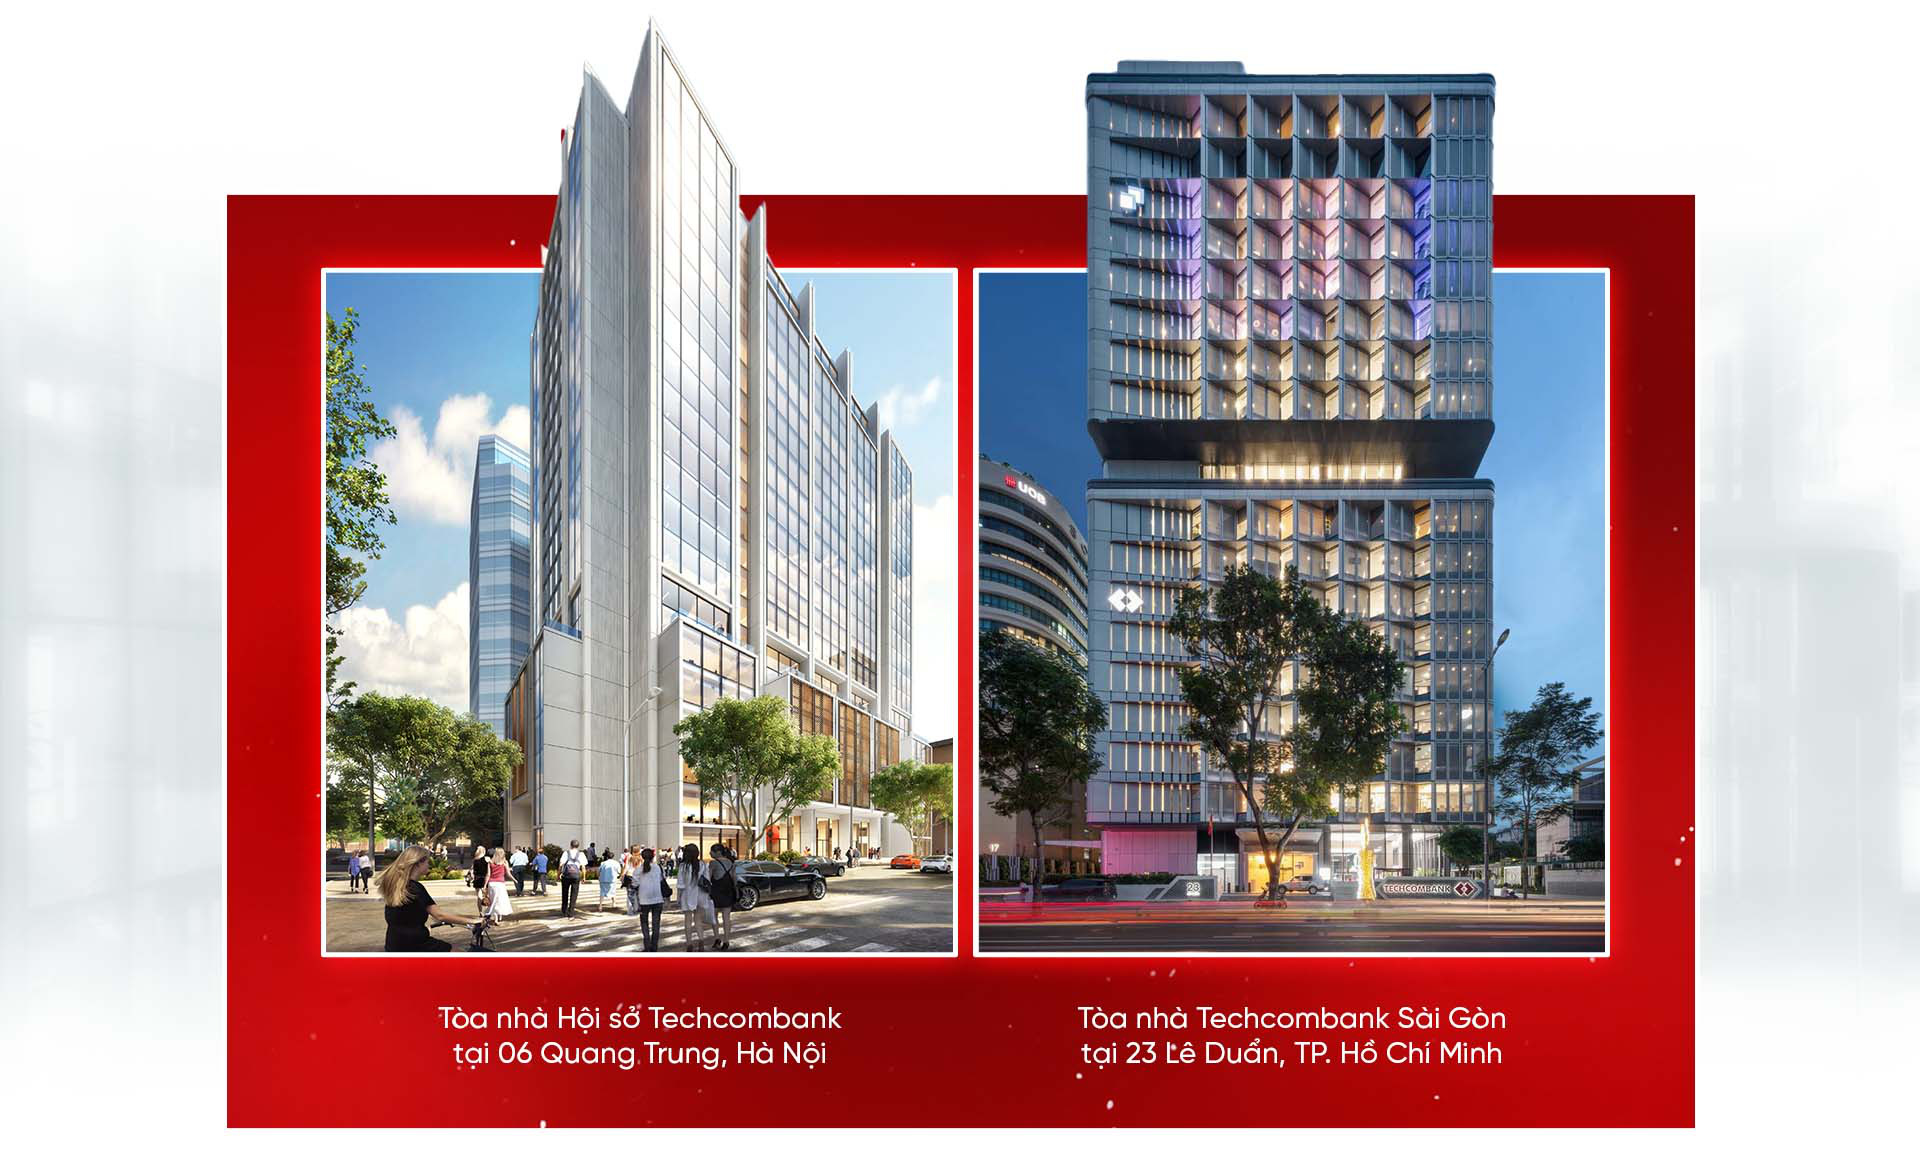 Khai trương 2 tòa nhà Techcombank tại Hà Nội và TP.HCM: Tương lai vượt trội trên nền di sản - Ảnh 3.